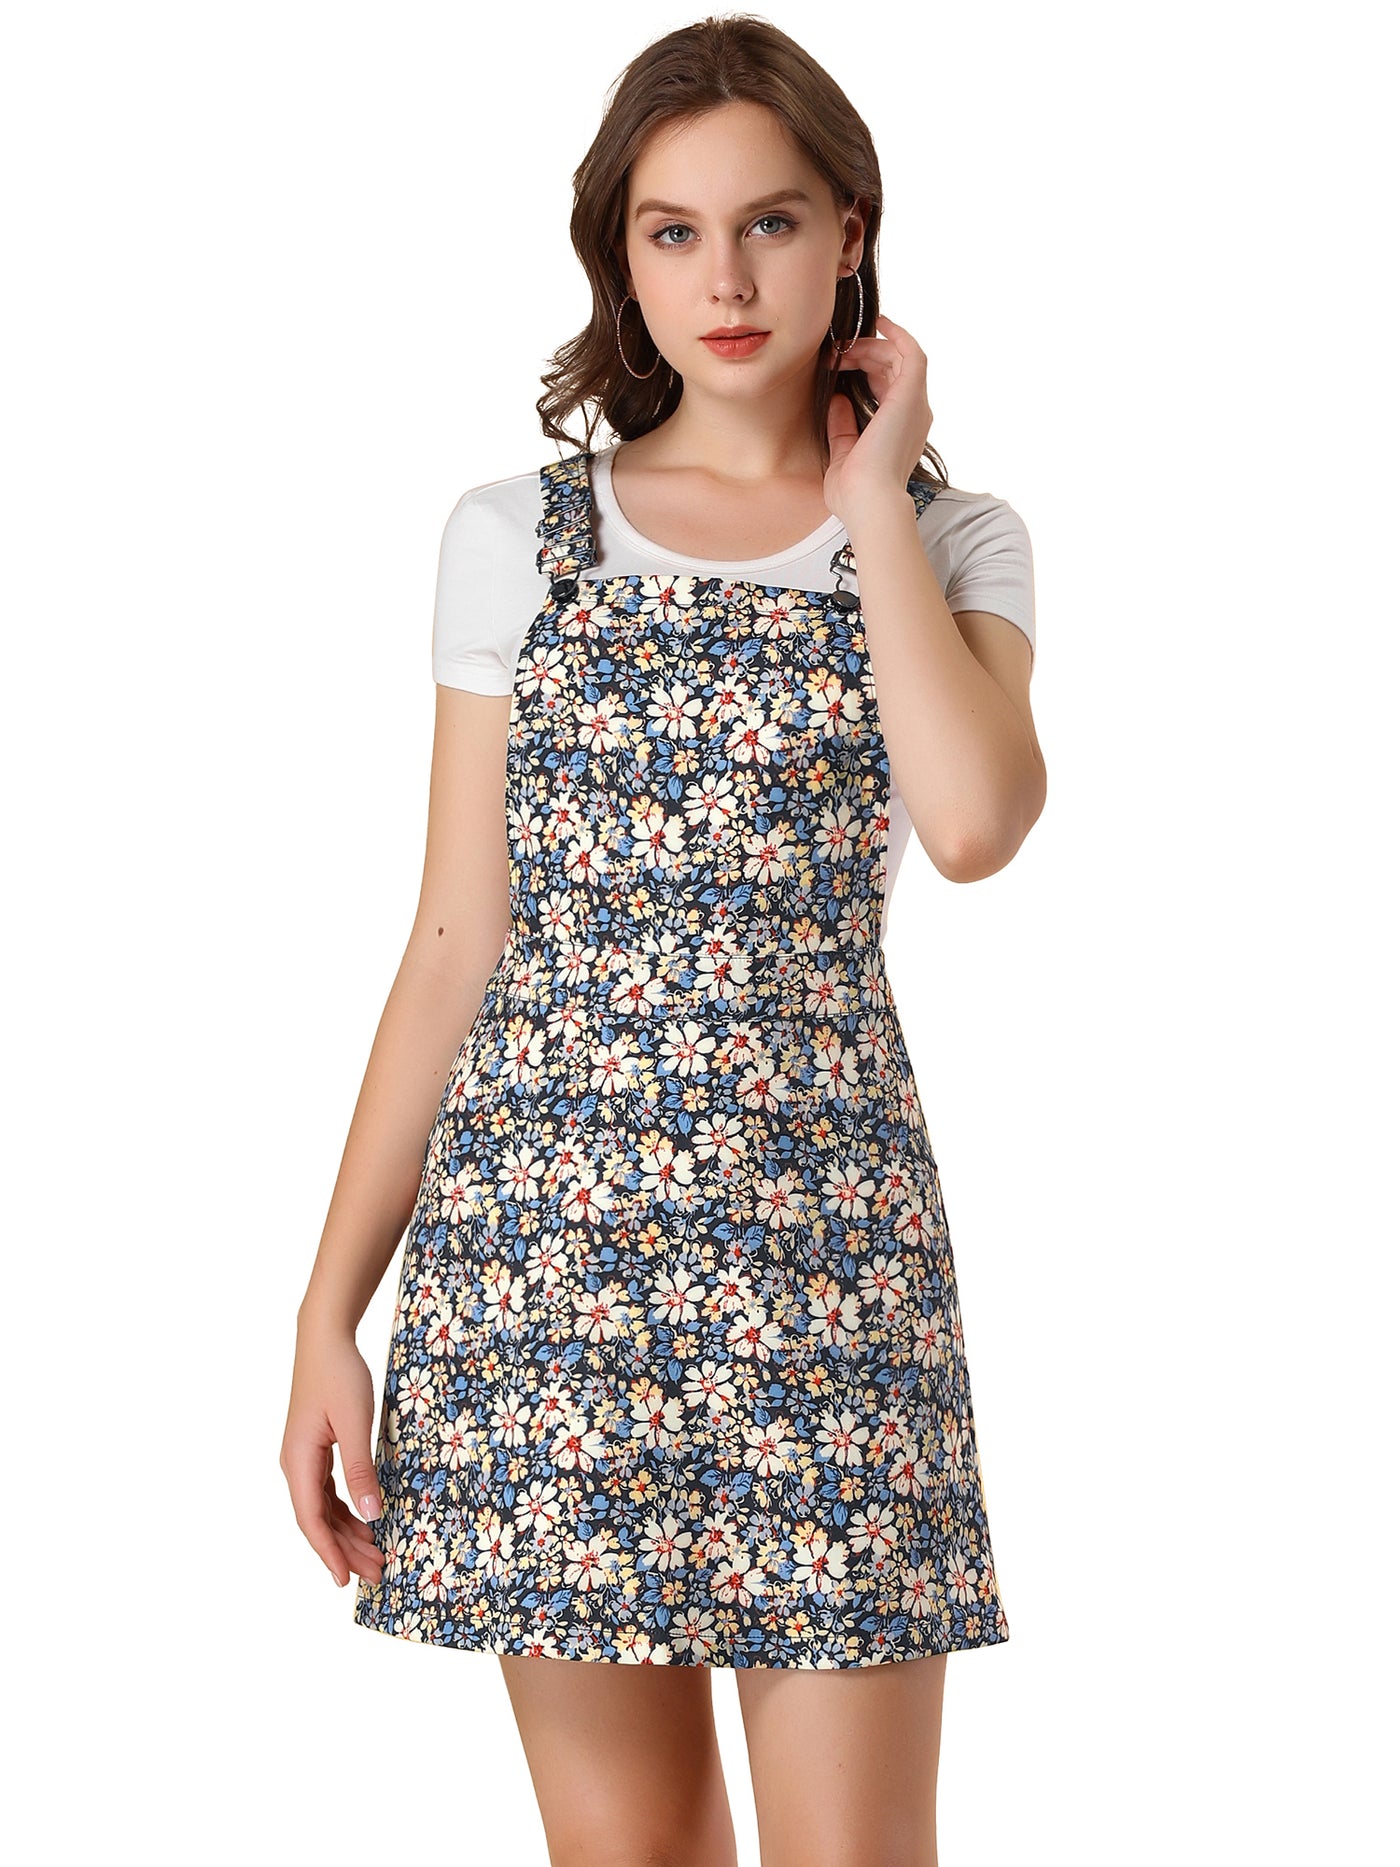 Allegra K Floral Dress Adjustable Strap Above Knee Overall Skirt